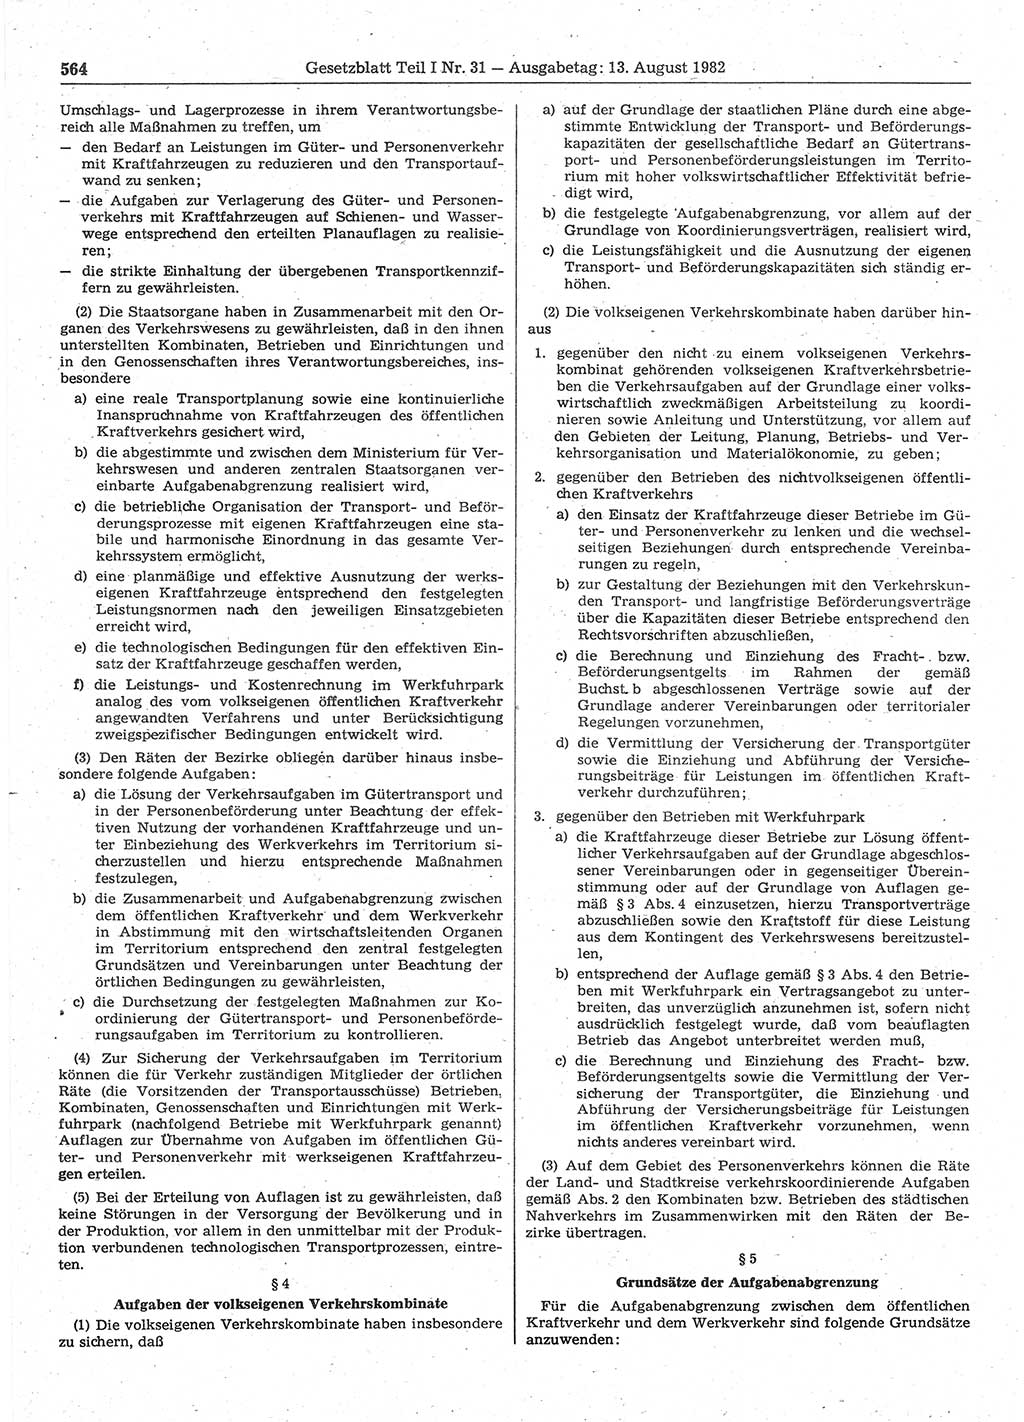 Gesetzblatt (GBl.) der Deutschen Demokratischen Republik (DDR) Teil Ⅰ 1982, Seite 564 (GBl. DDR Ⅰ 1982, S. 564)